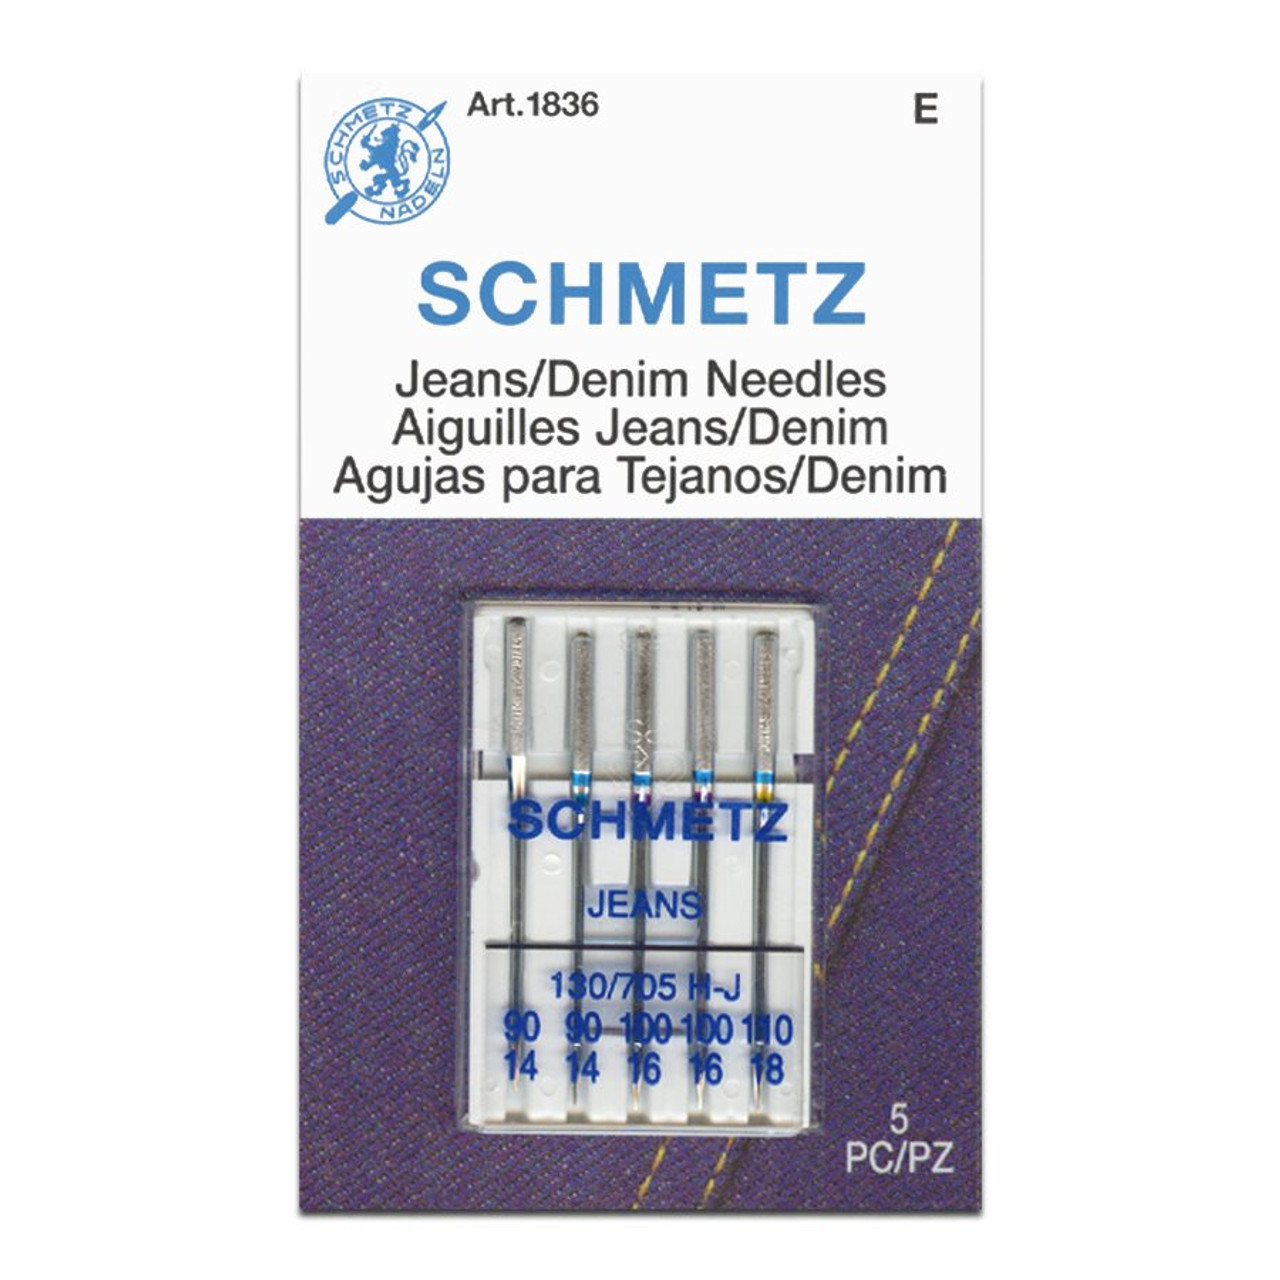 Schmetz Jeans/Denim Needles